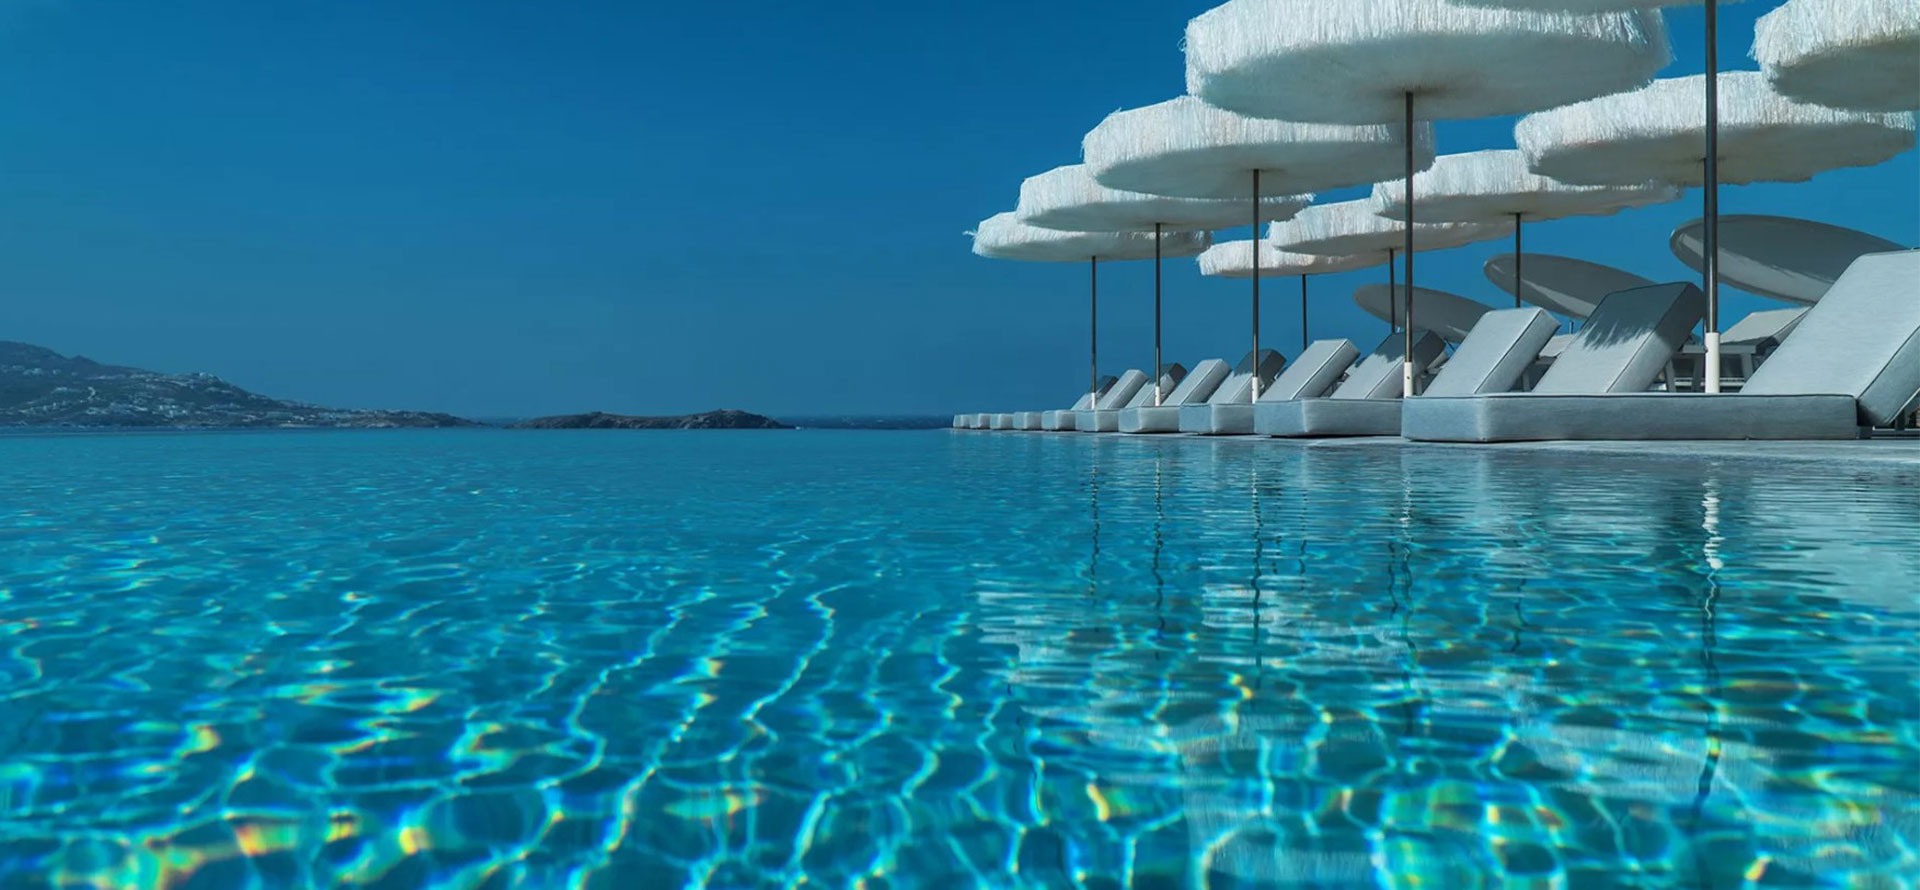 Poolside lounger in Mykonos.